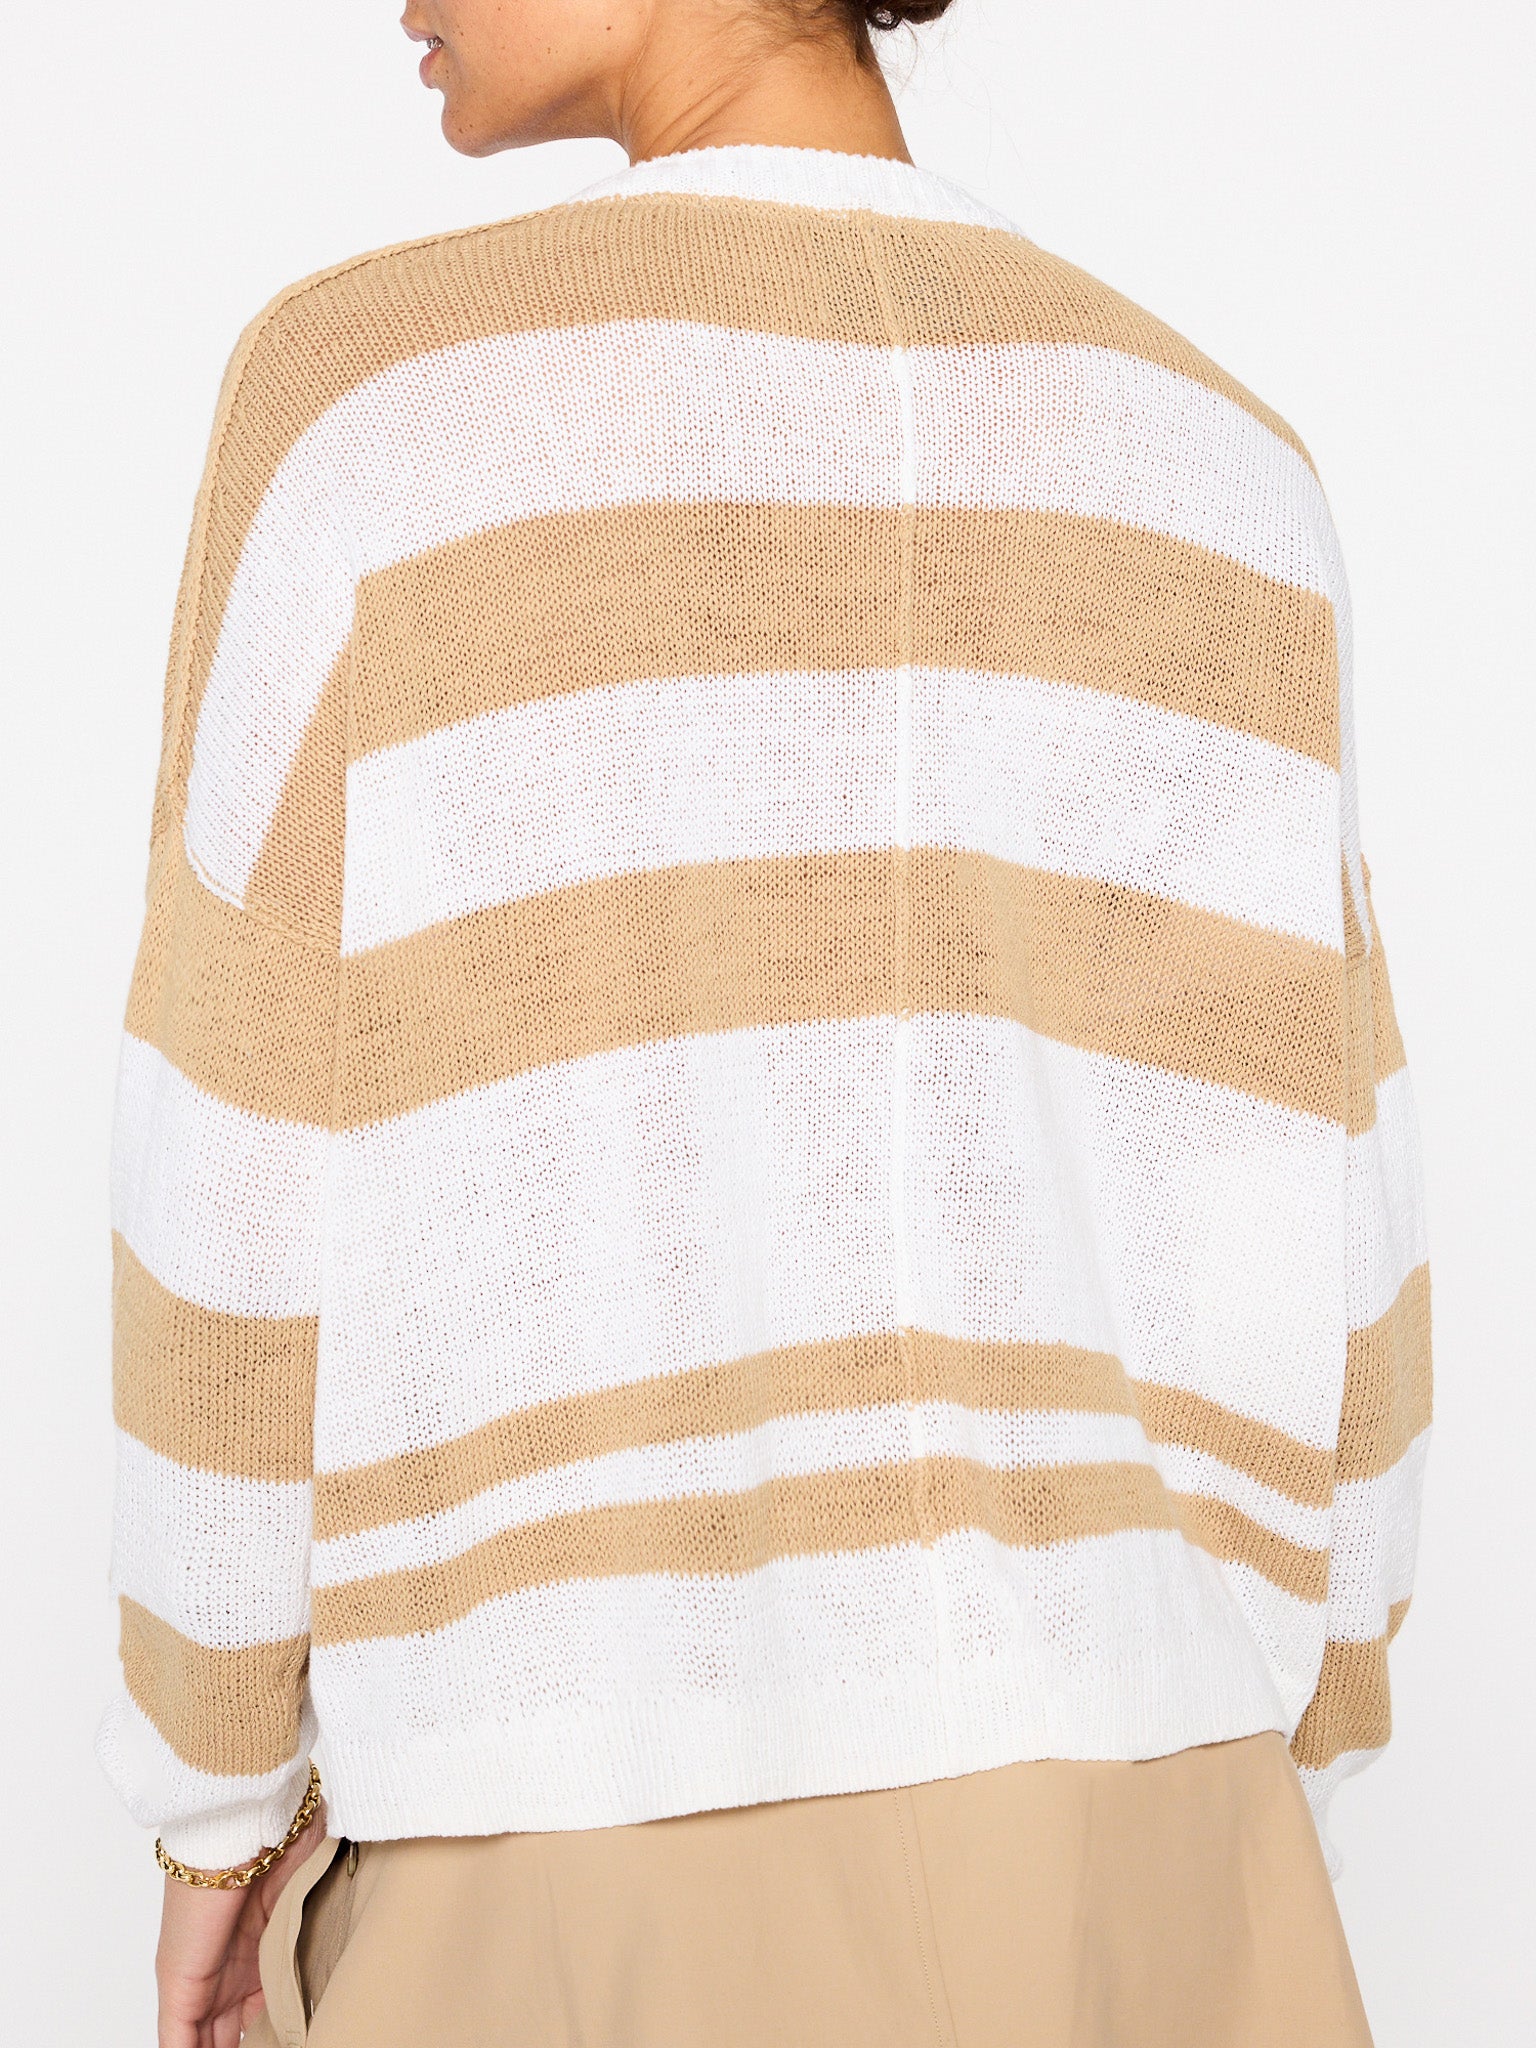 Xila tan white stripe cotton-linen crewneck sweater back view